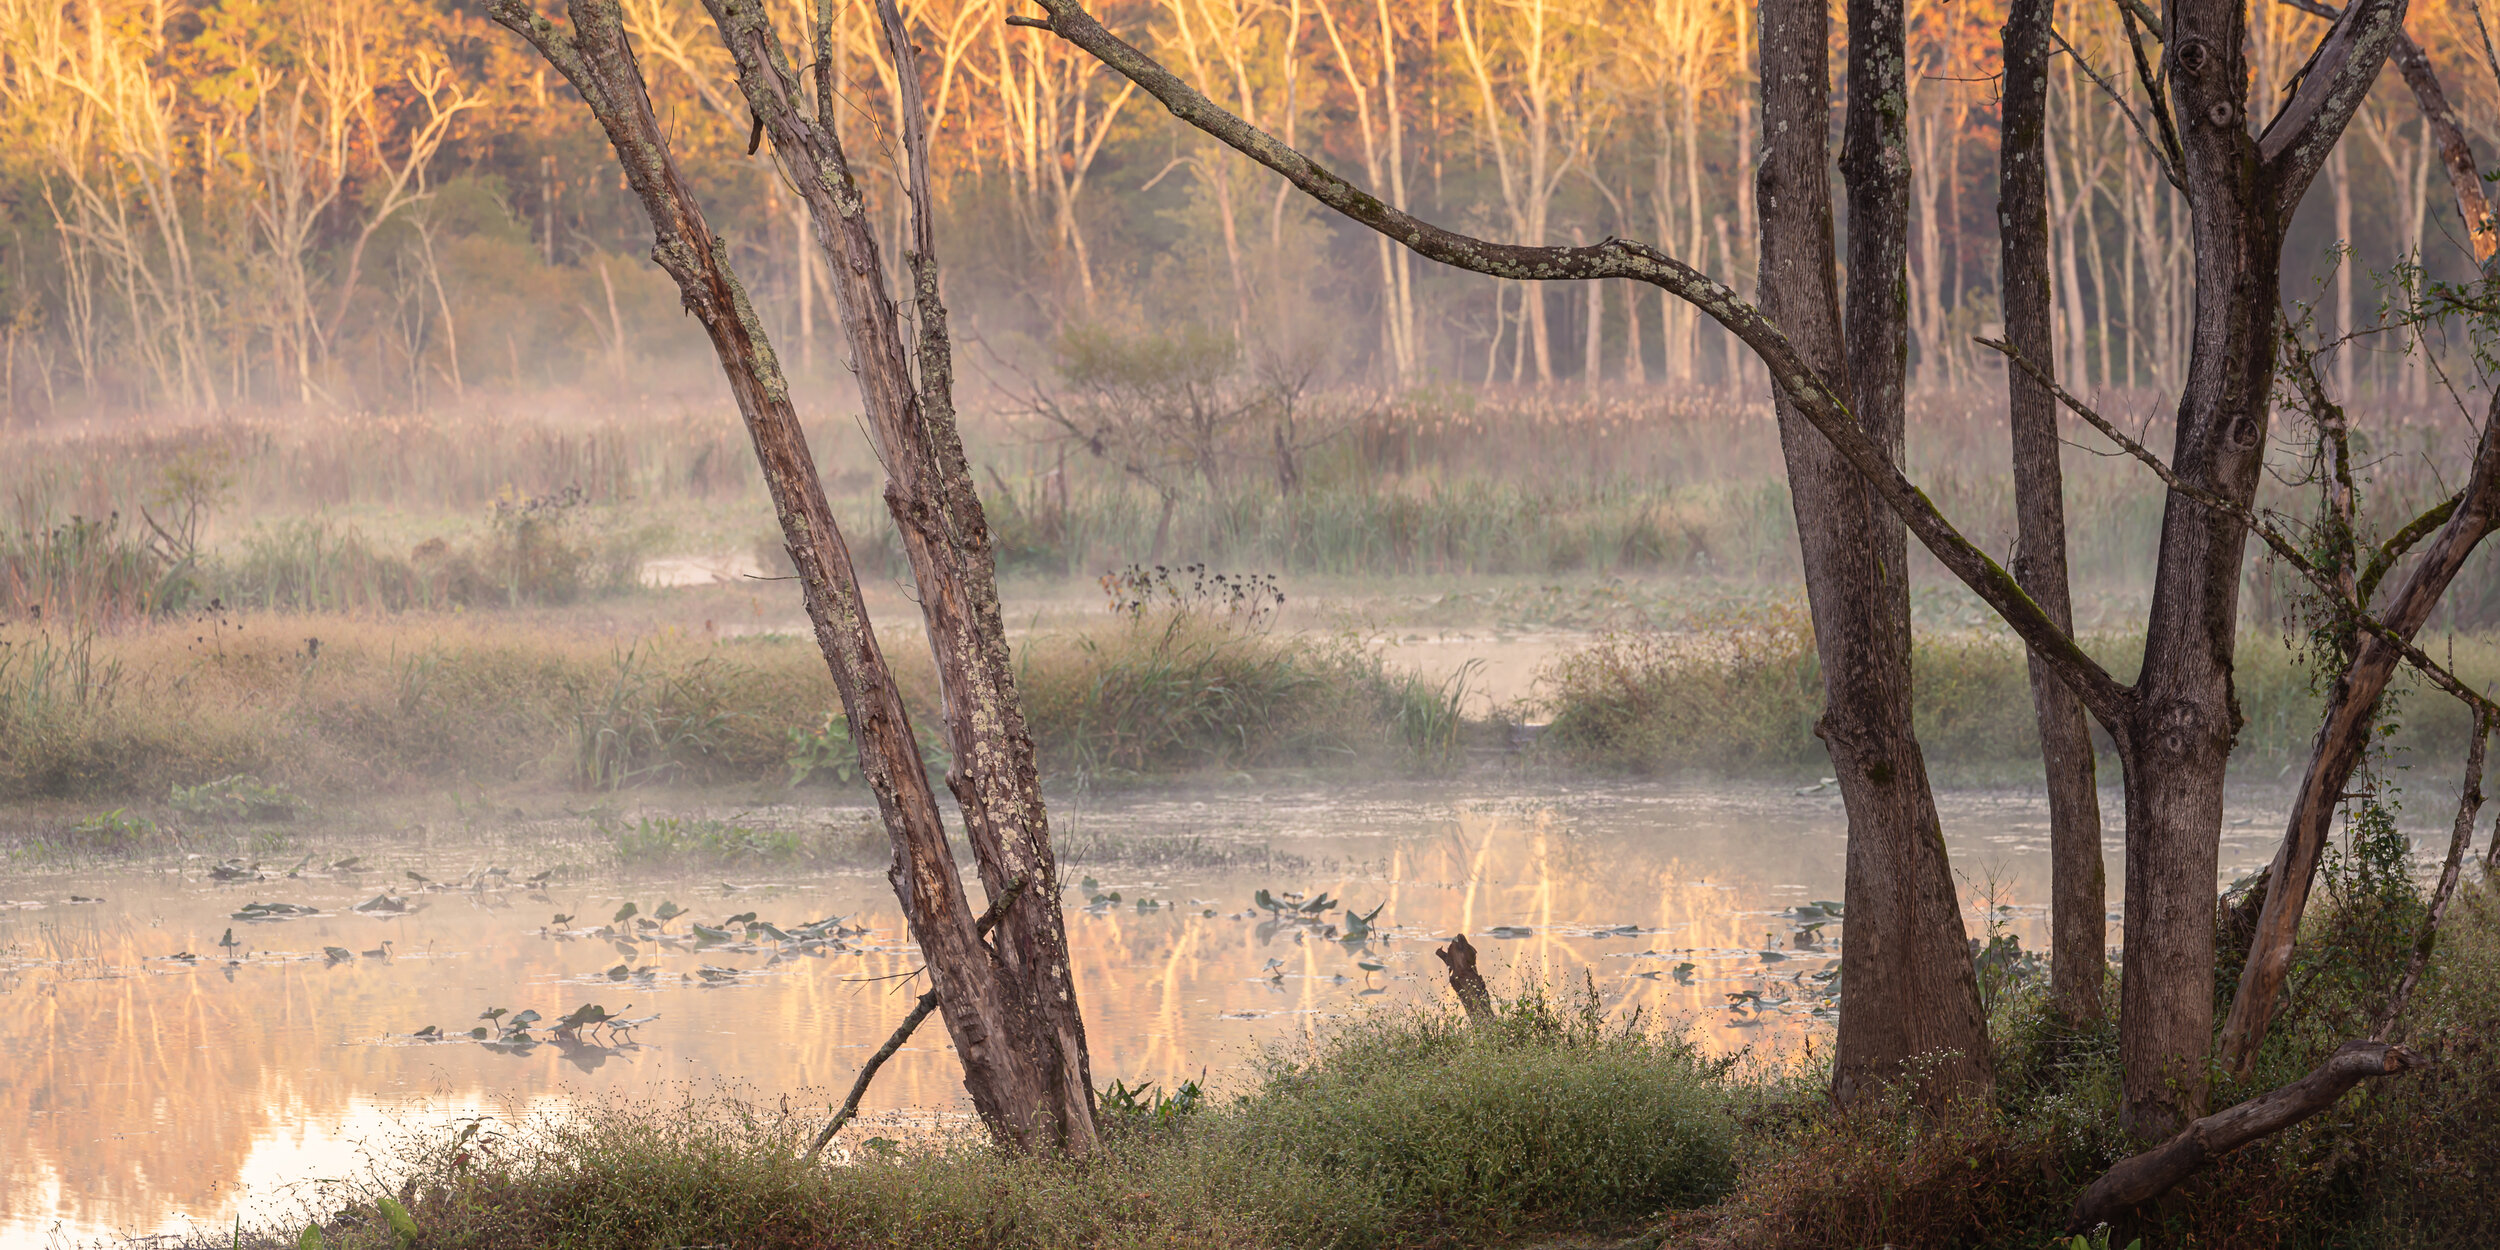 beaver ponds through the trees